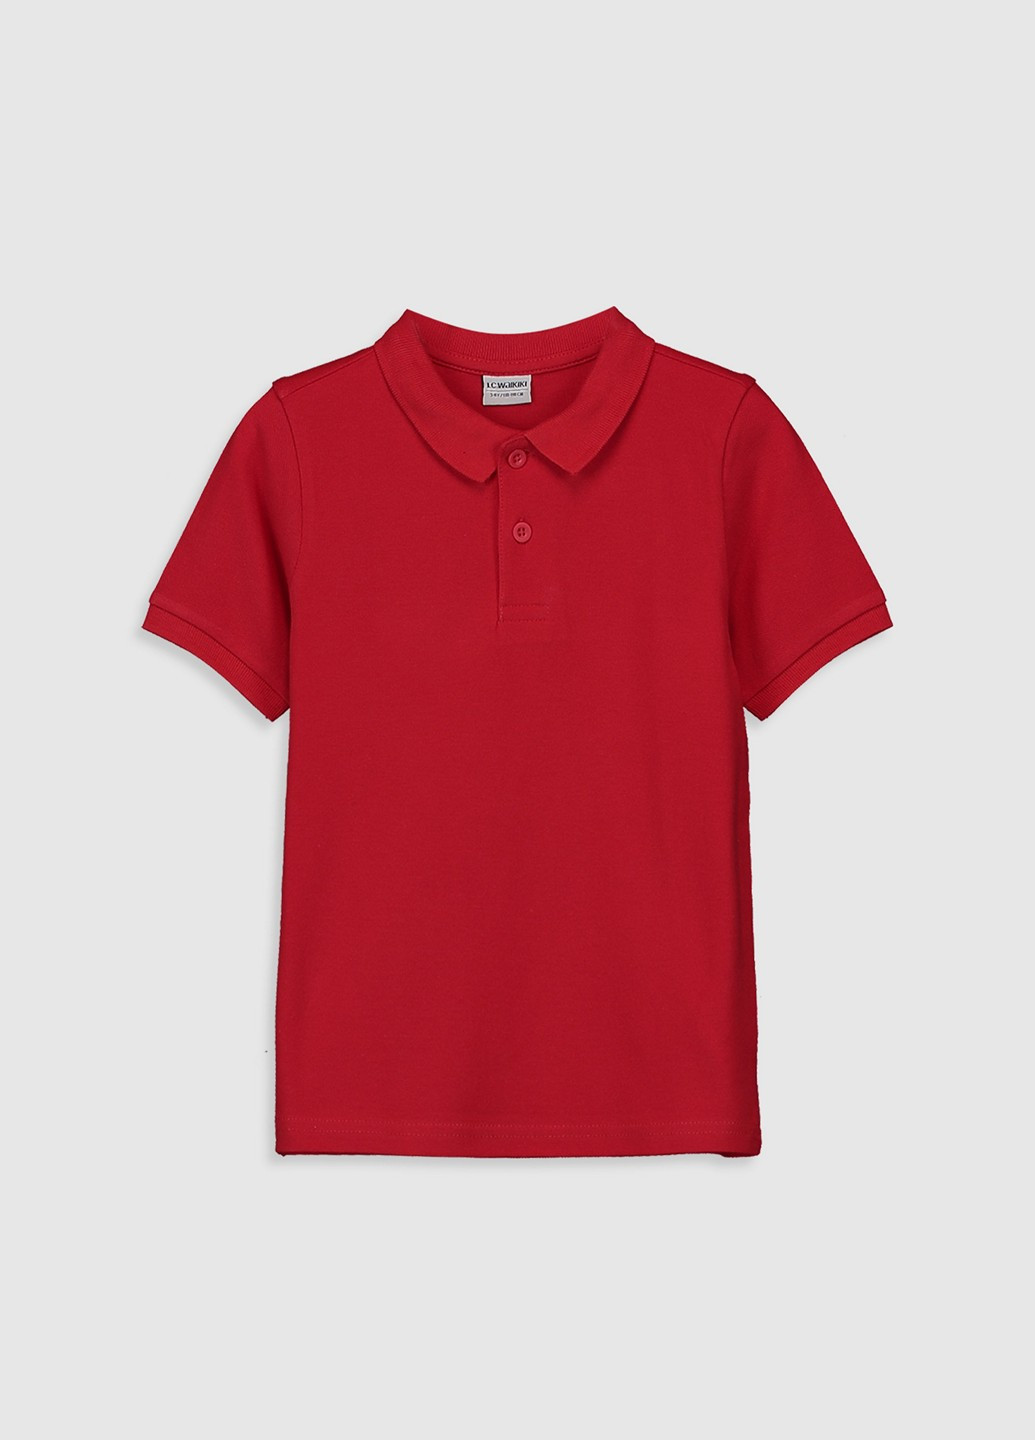 Красная детская футболка-поло для мальчика LC Waikiki